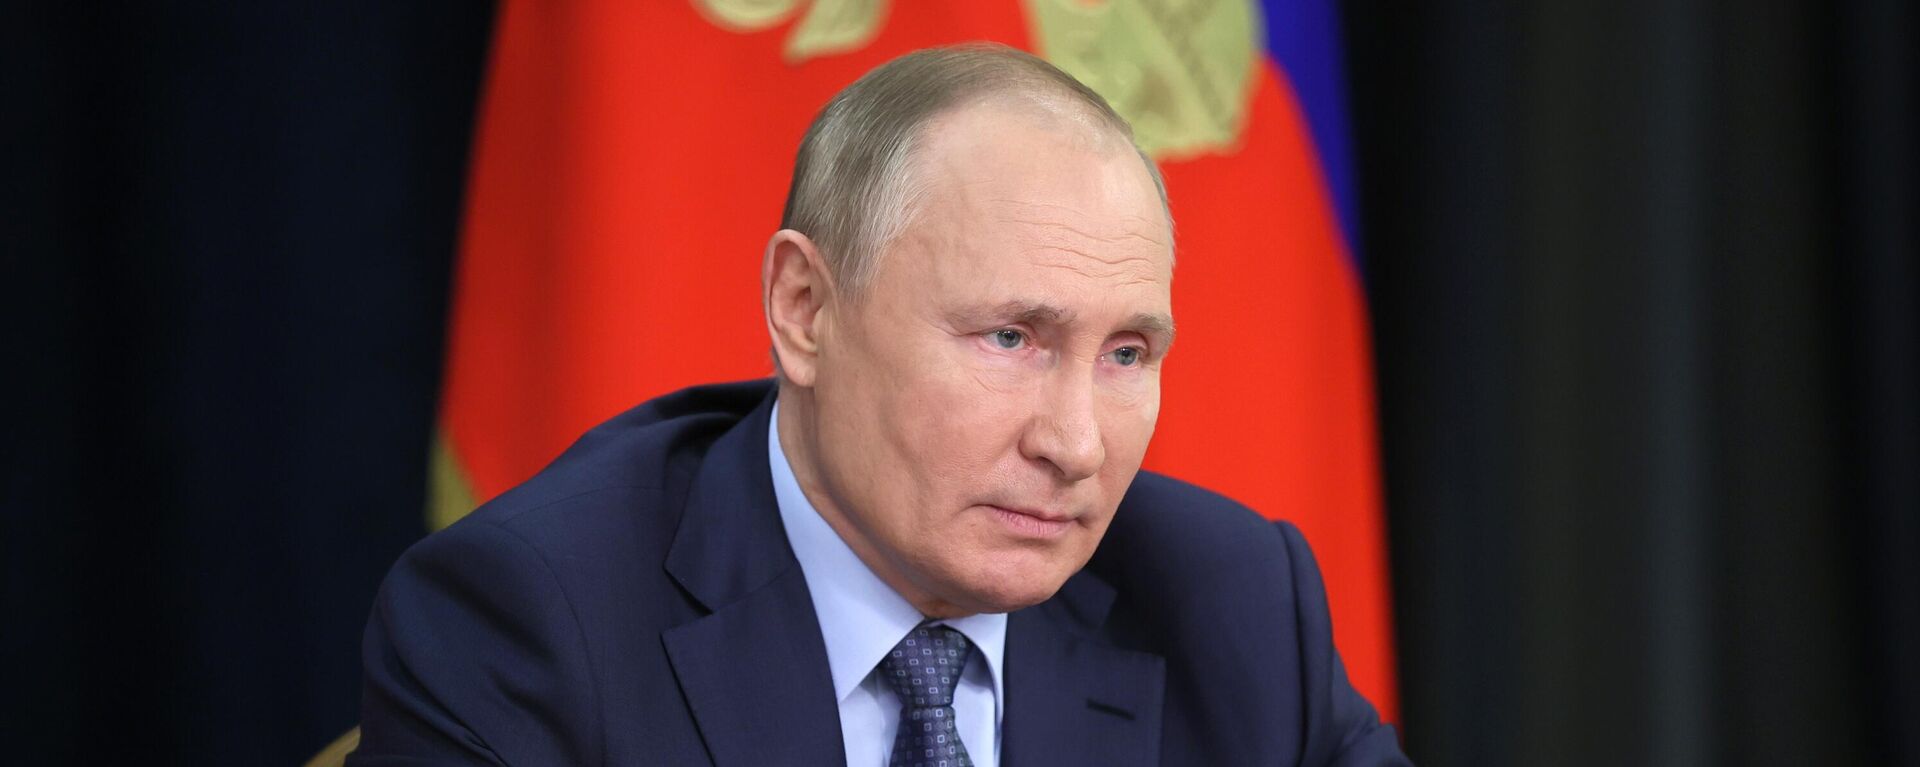 El presidente de Rusia, Vladímir Putin, durante una reunión sobre asuntos económicos, el 7 de diciembre de 2021 - Sputnik Mundo, 1920, 14.12.2021